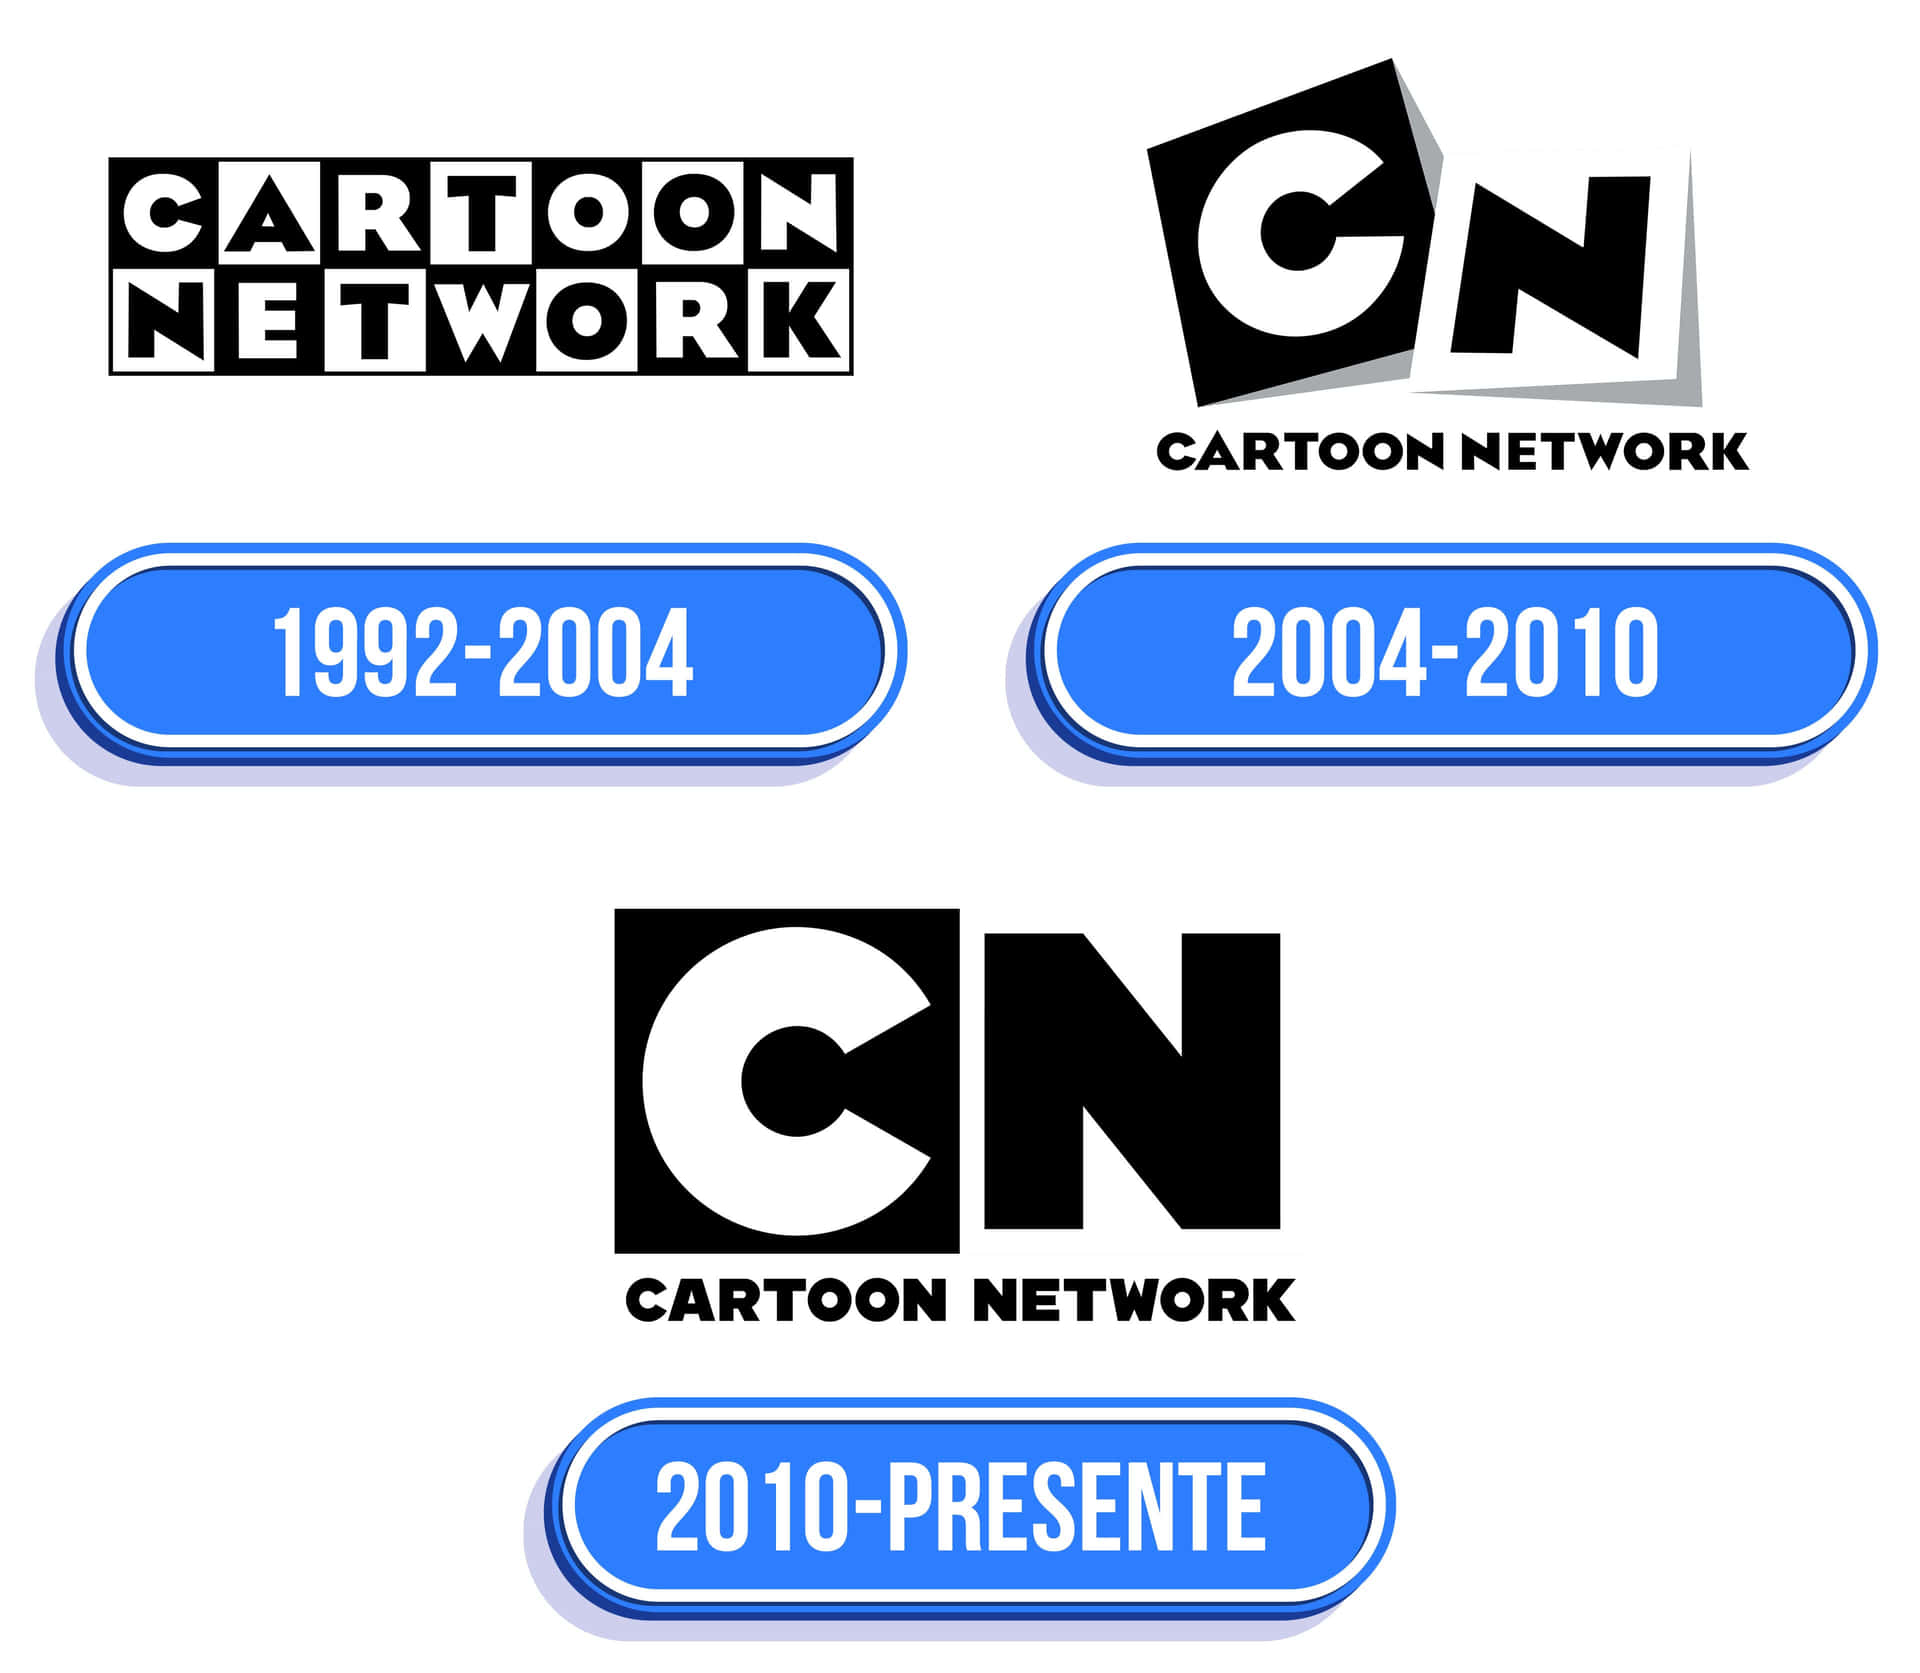 Imagensdo Cartoon Network.